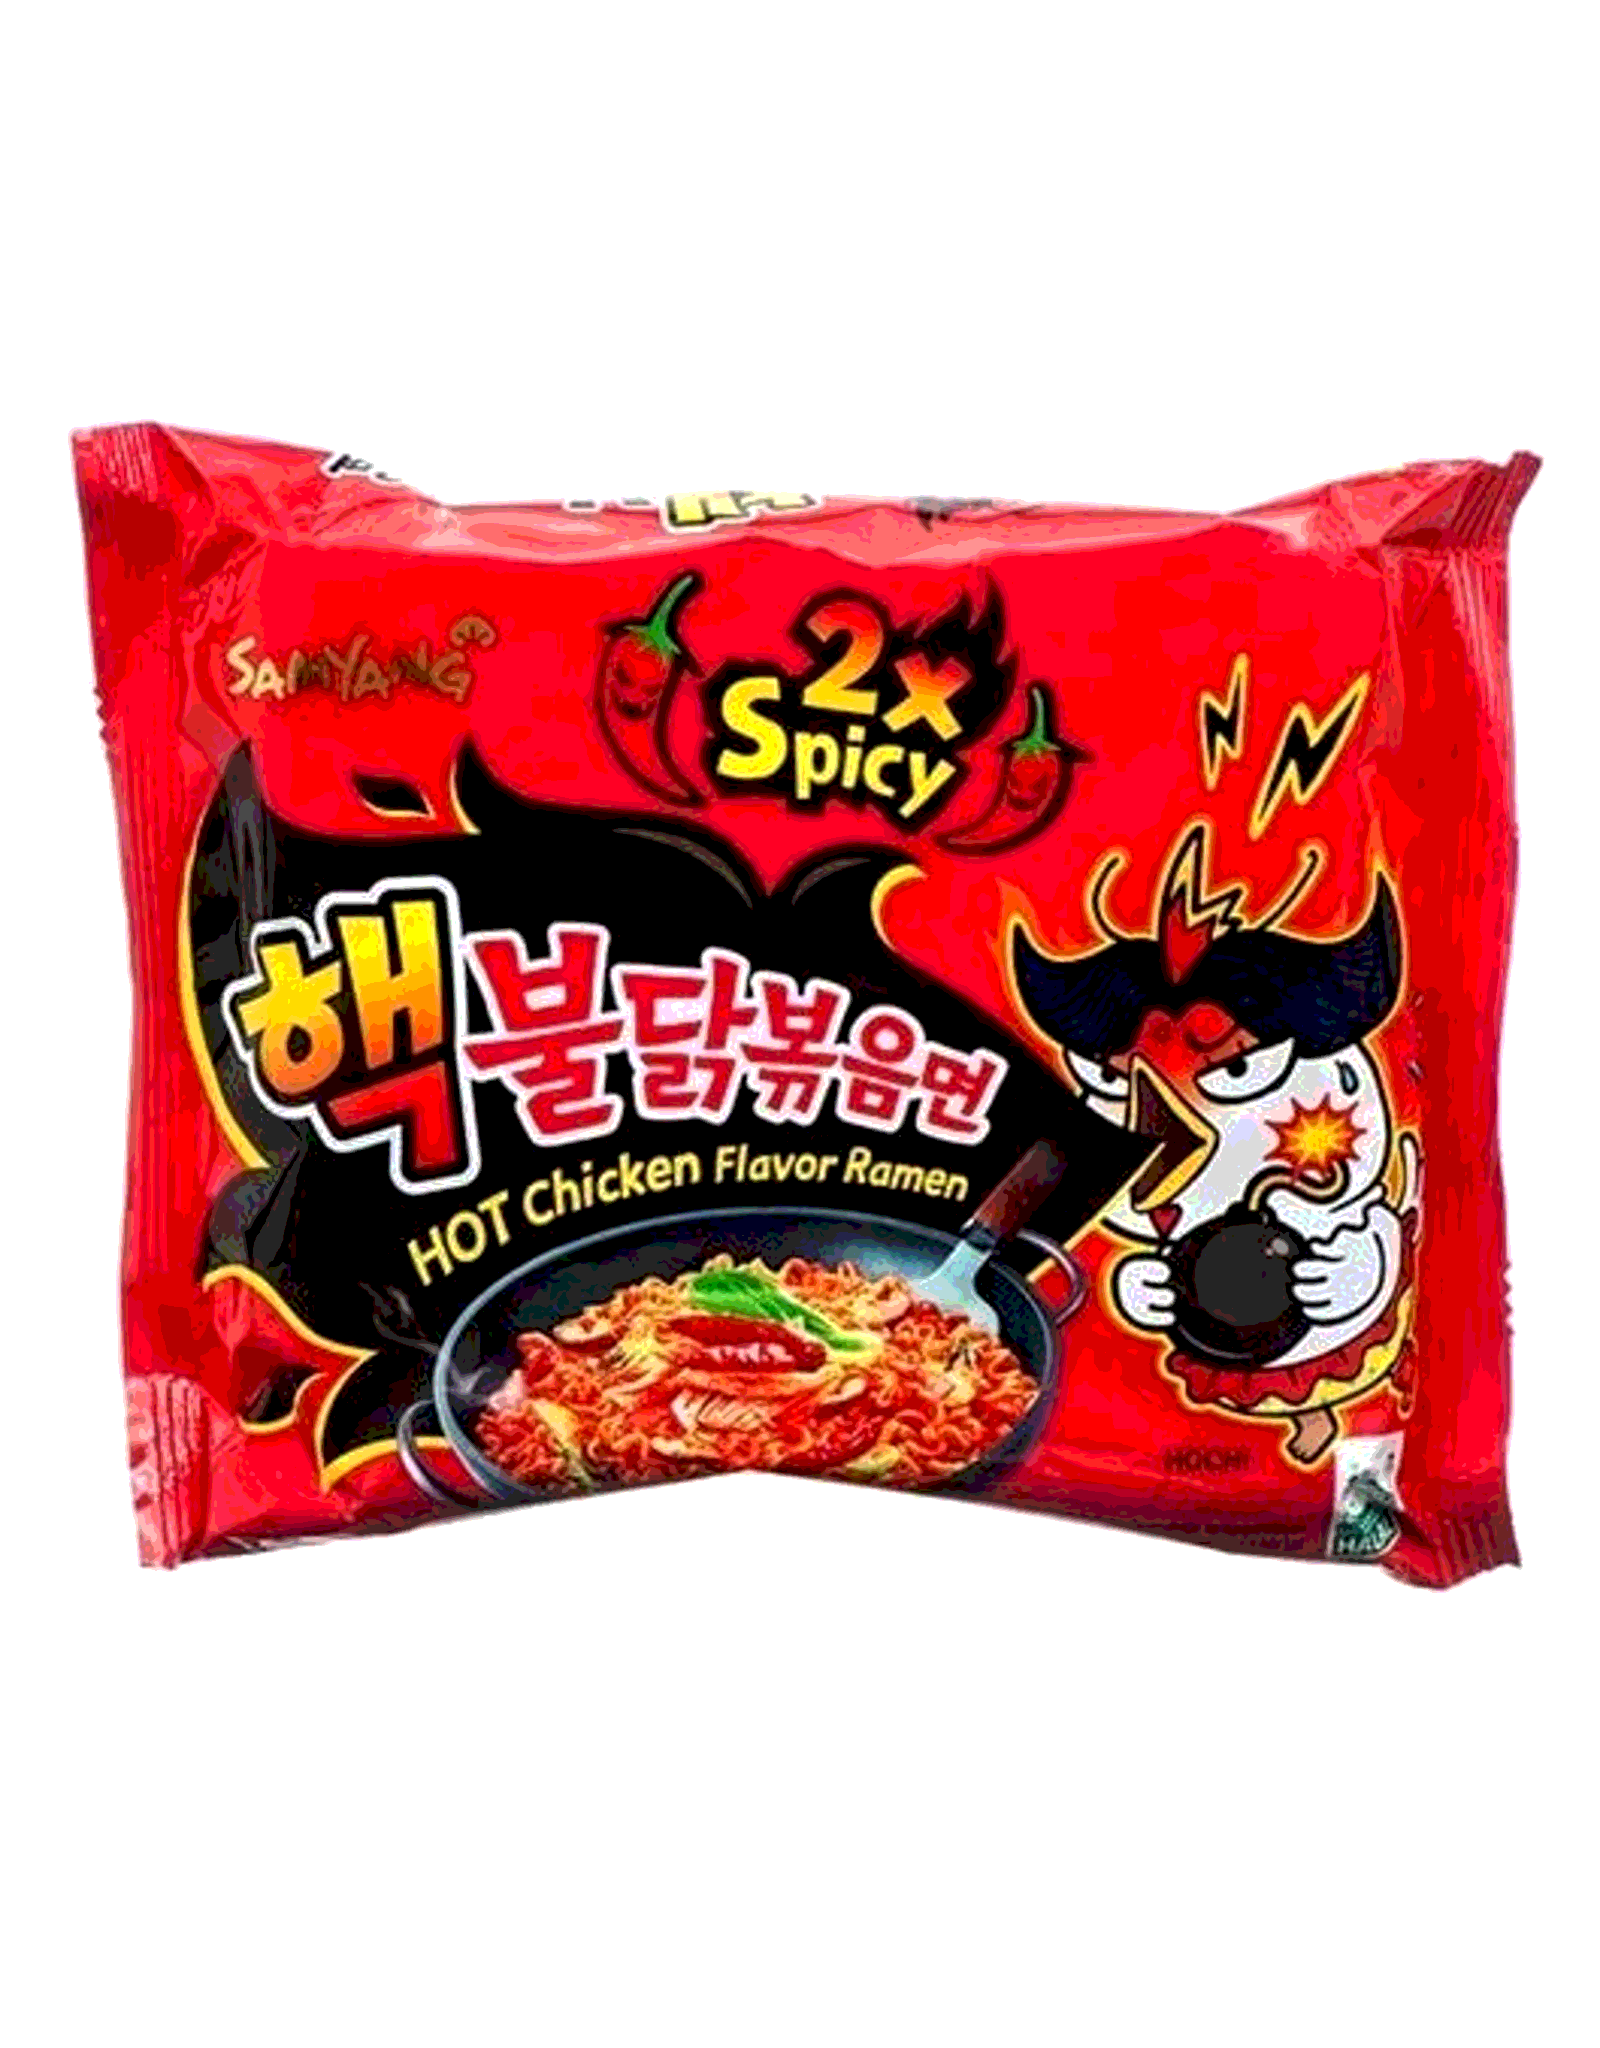 Лапша spicy. Samyang лапша 2x Spicy. Samyang 2x Spicy hot Chicken flavor. Samyang 2x Spicy Noodles. Samyang x2 рамен.